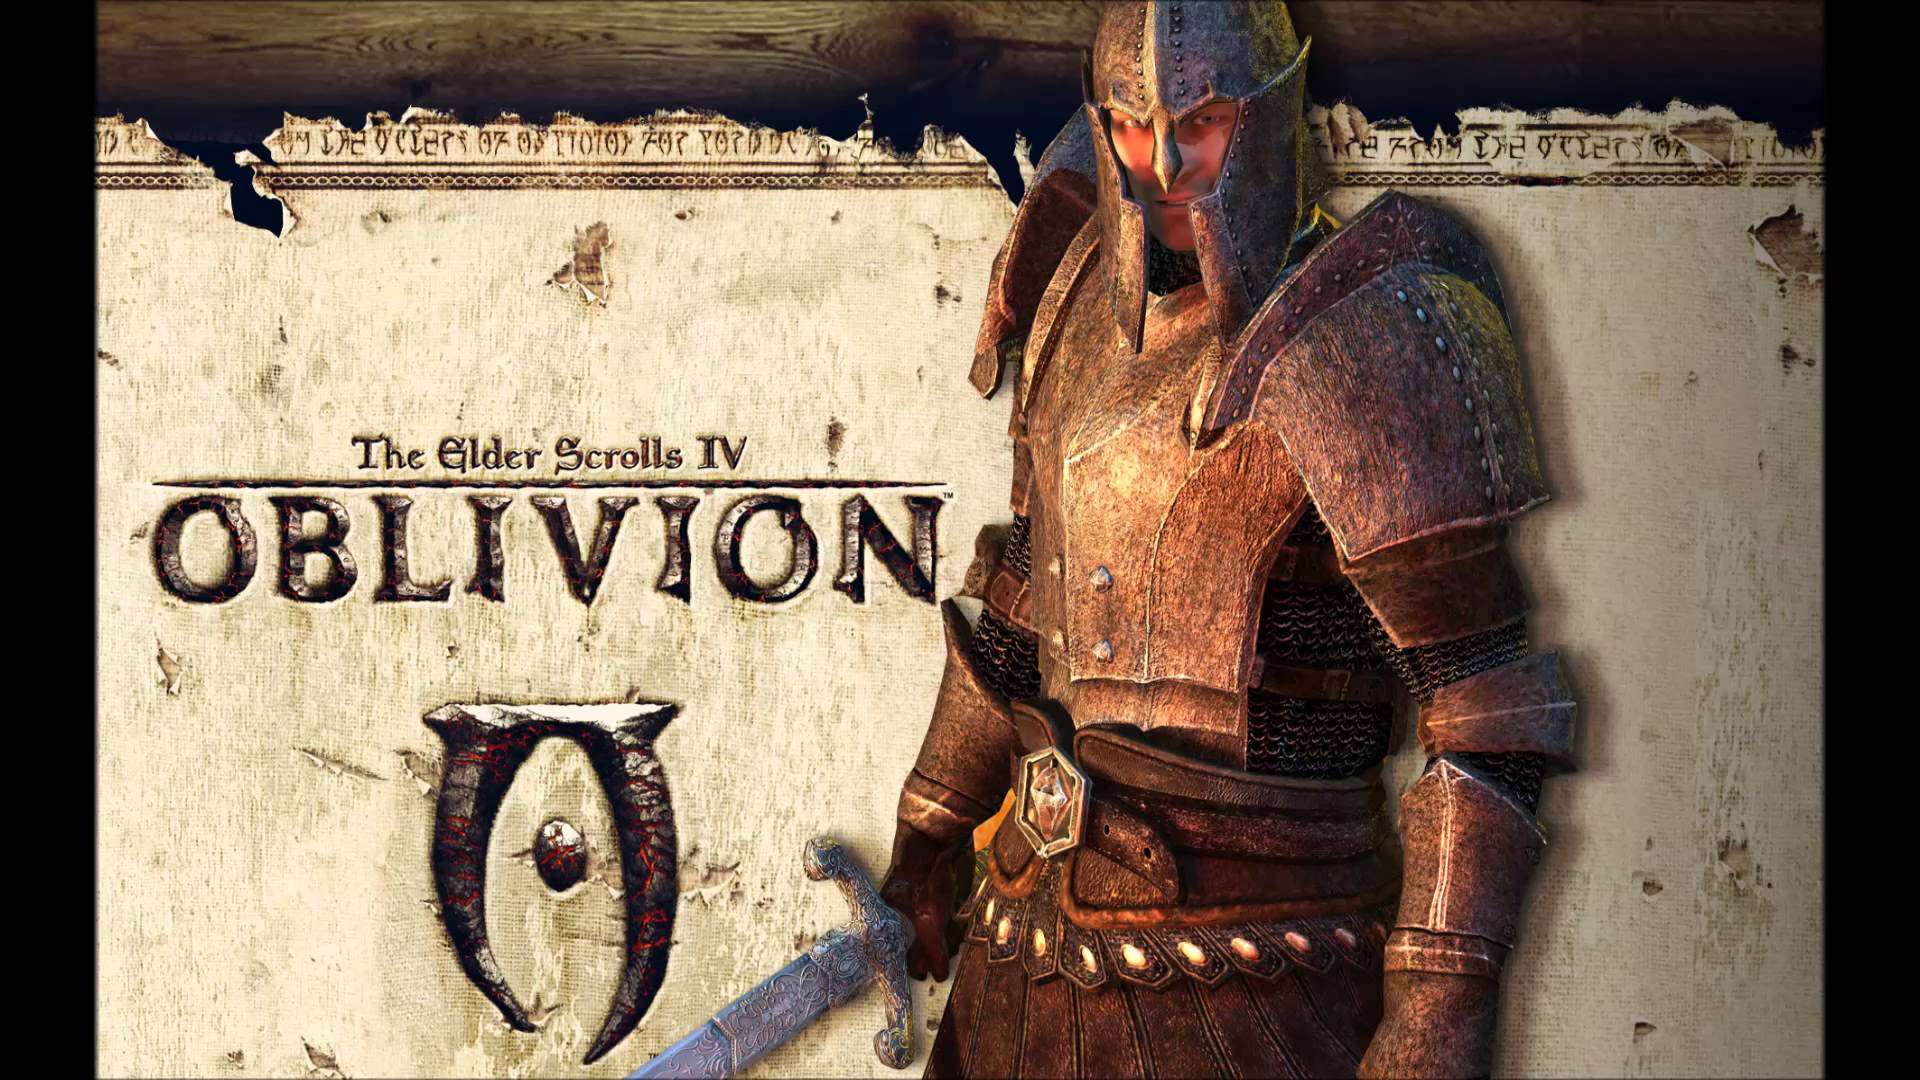 The Elder Scrolls Iv Oblivion Pc Full Torrent